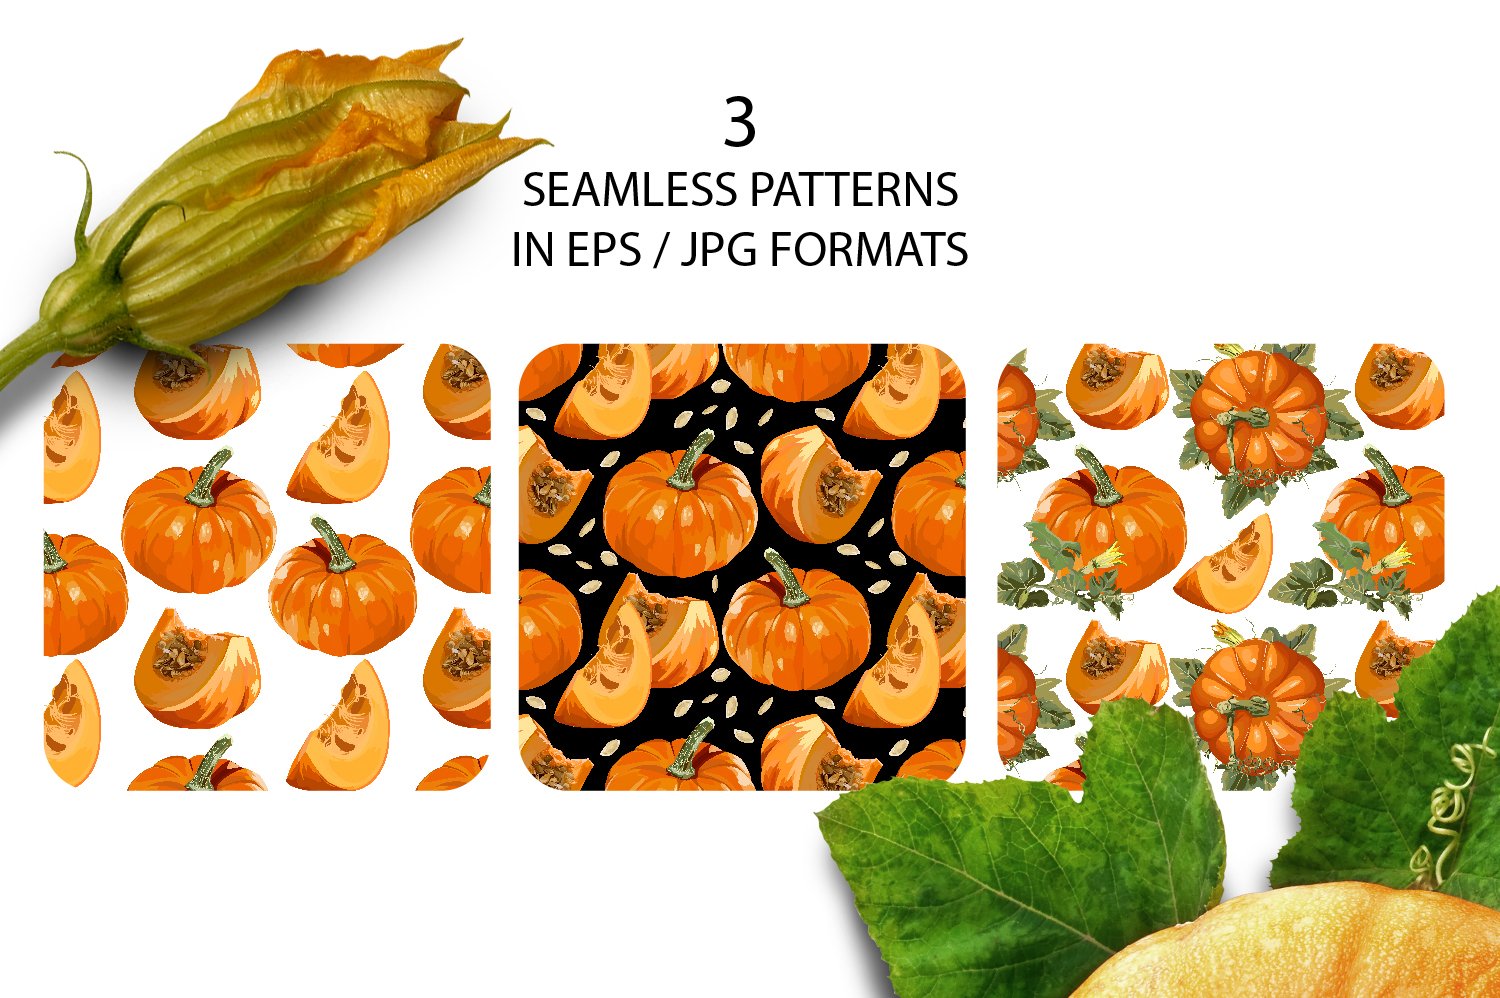 Orange patterns with pumkins.